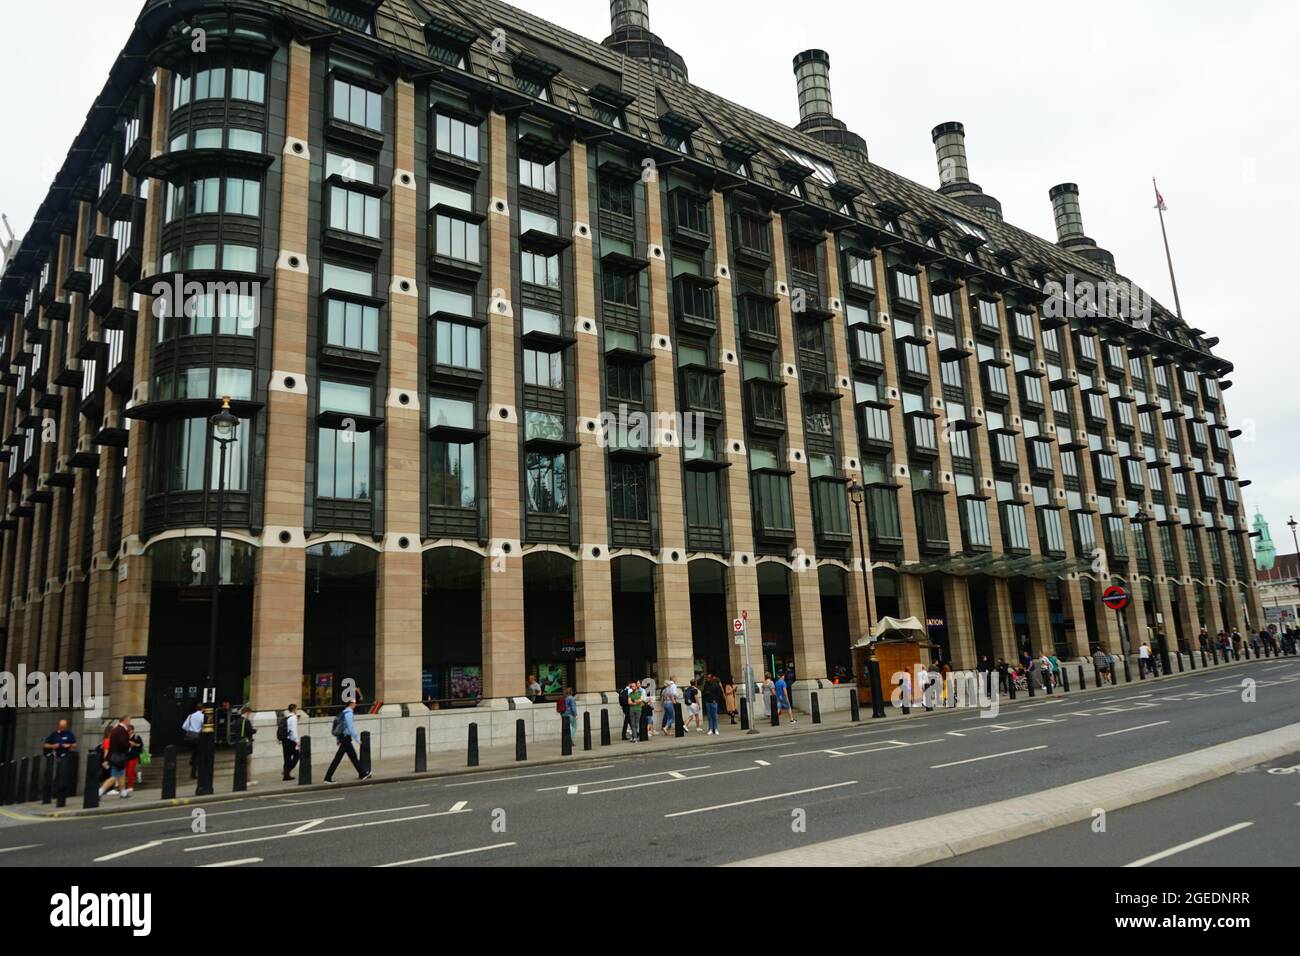 La gare de Westminster et les bâtiments environnants sur Bridge Rd près du pont de Westminster à Londres, Angleterre, U.K Banque D'Images